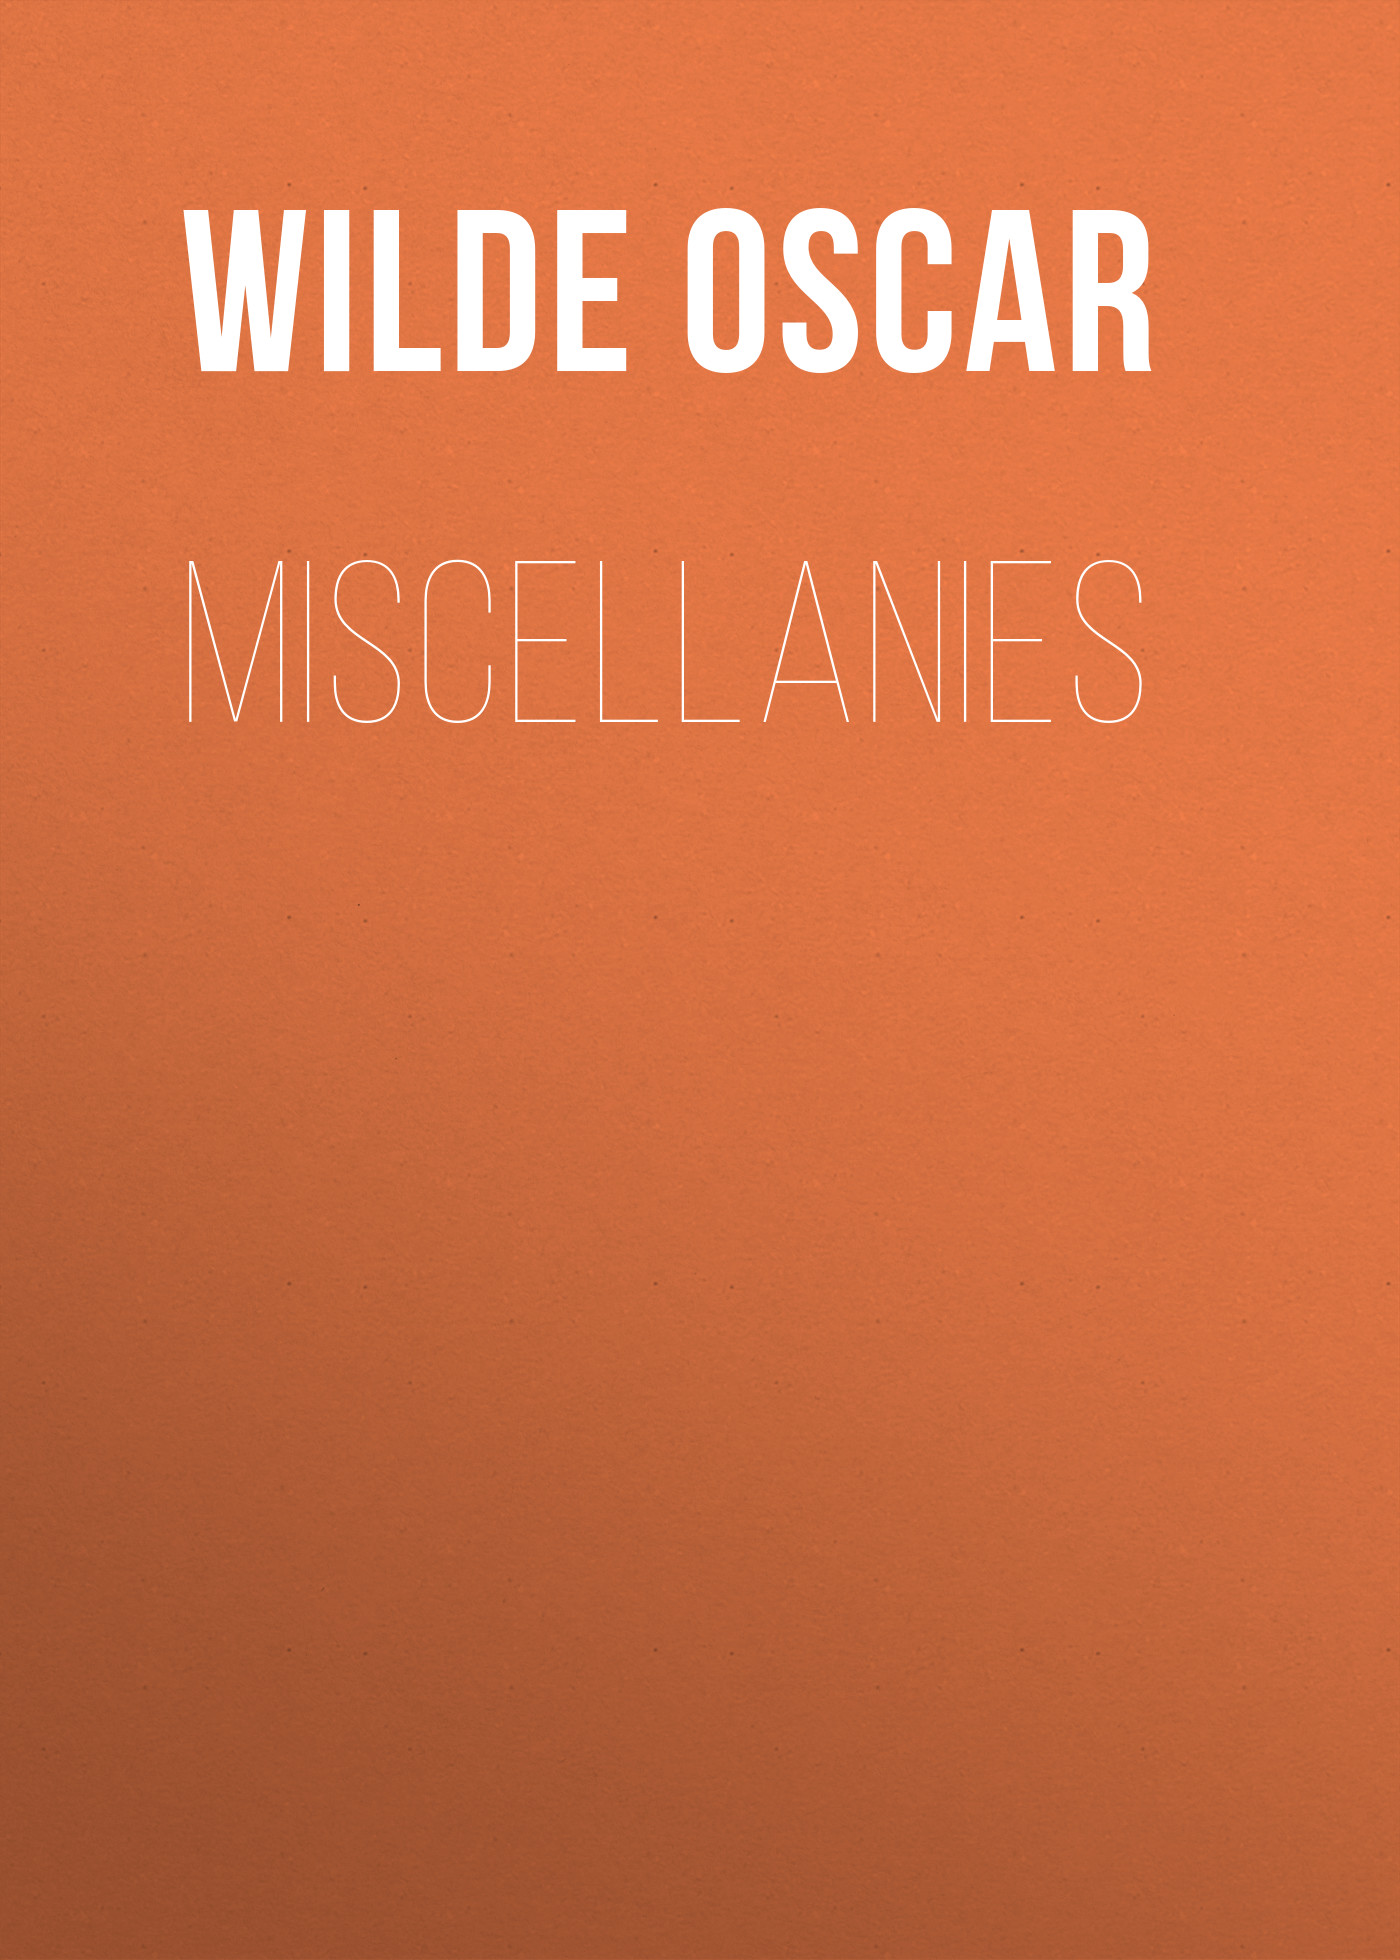 Книга Miscellanies из серии , созданная Oscar Wilde, может относится к жанру Литература 19 века, Зарубежная классика. Стоимость электронной книги Miscellanies с идентификатором 25560668 составляет 0 руб.